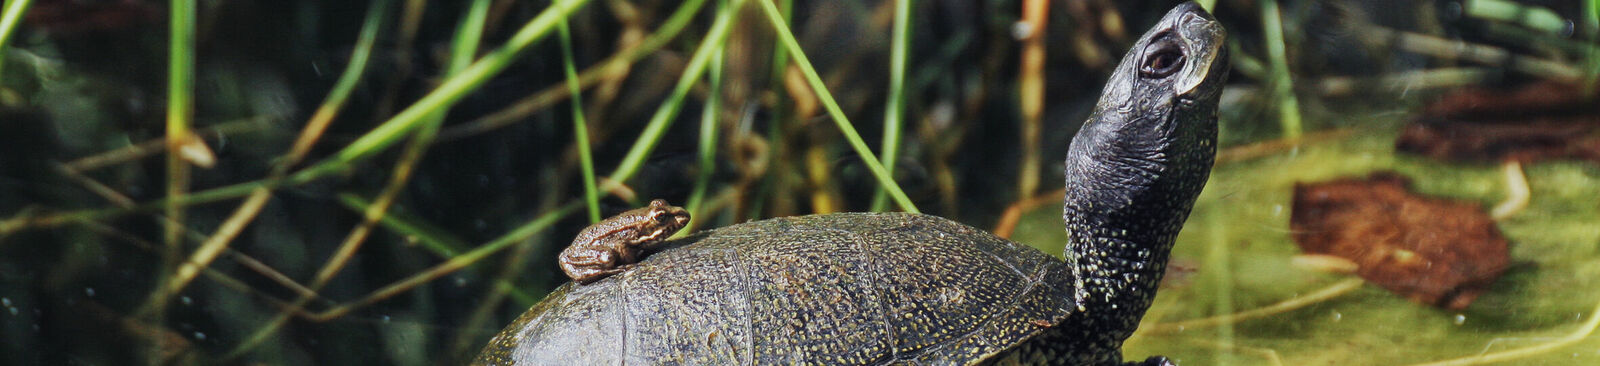 Europäische Sumpfschildkröte im Nationalpark Donau-Auen